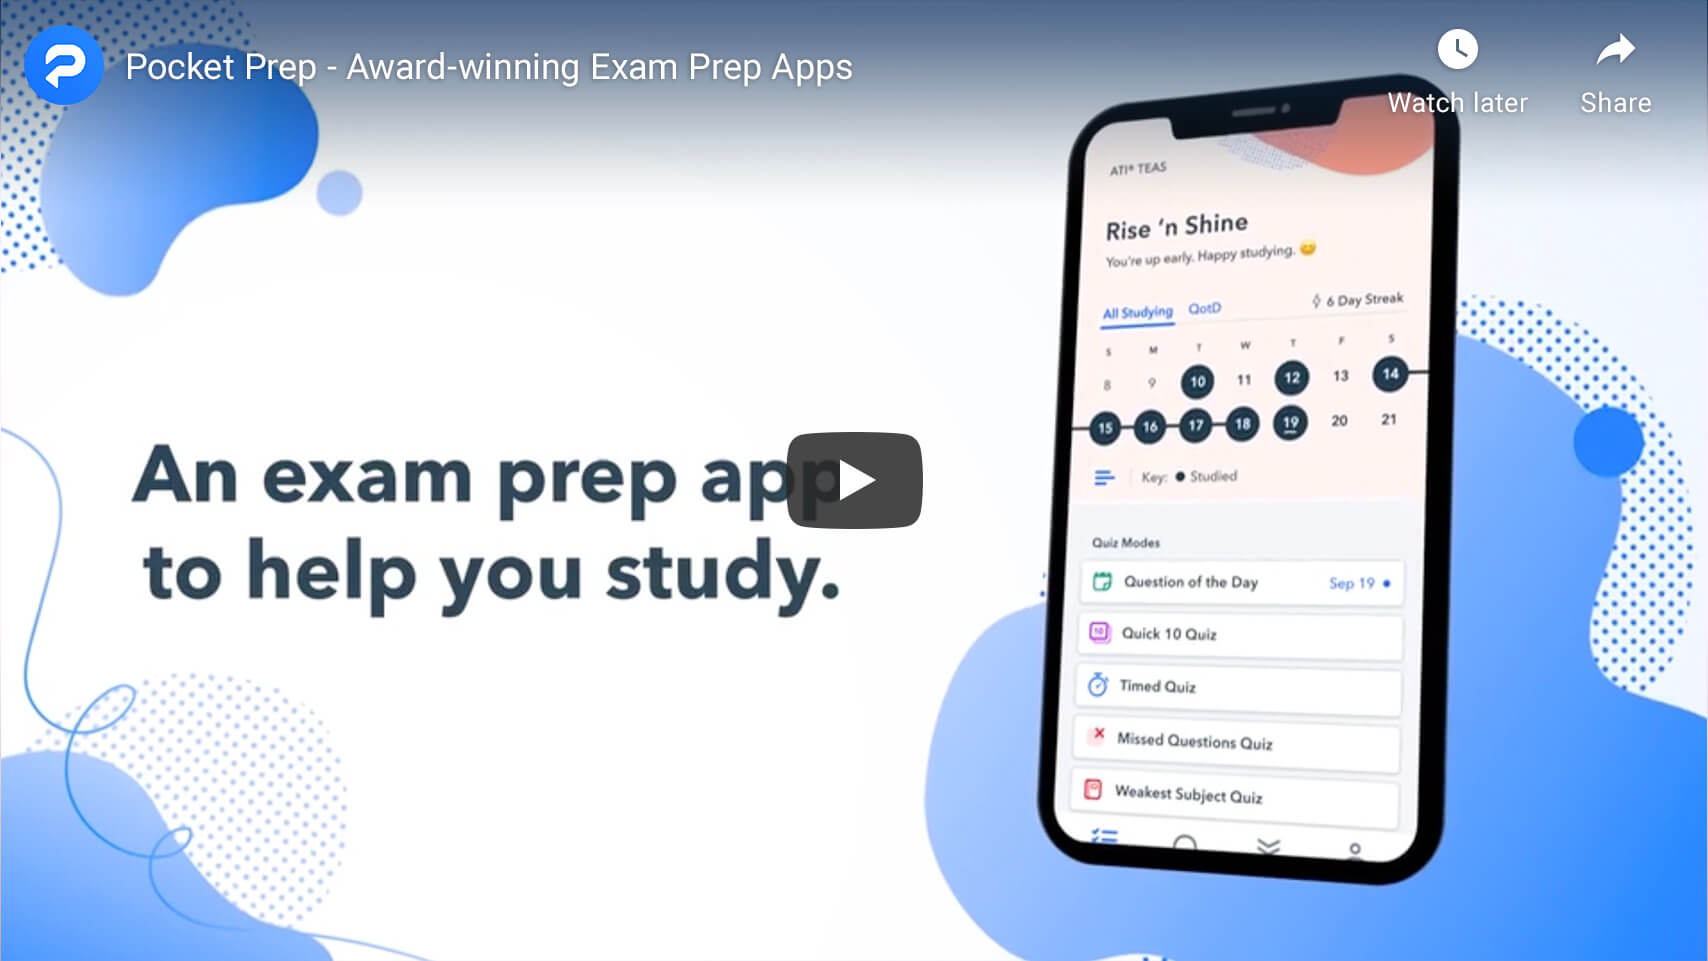 NPTE Exam Prep - Courses, Review & Study Guide, and Mobile App